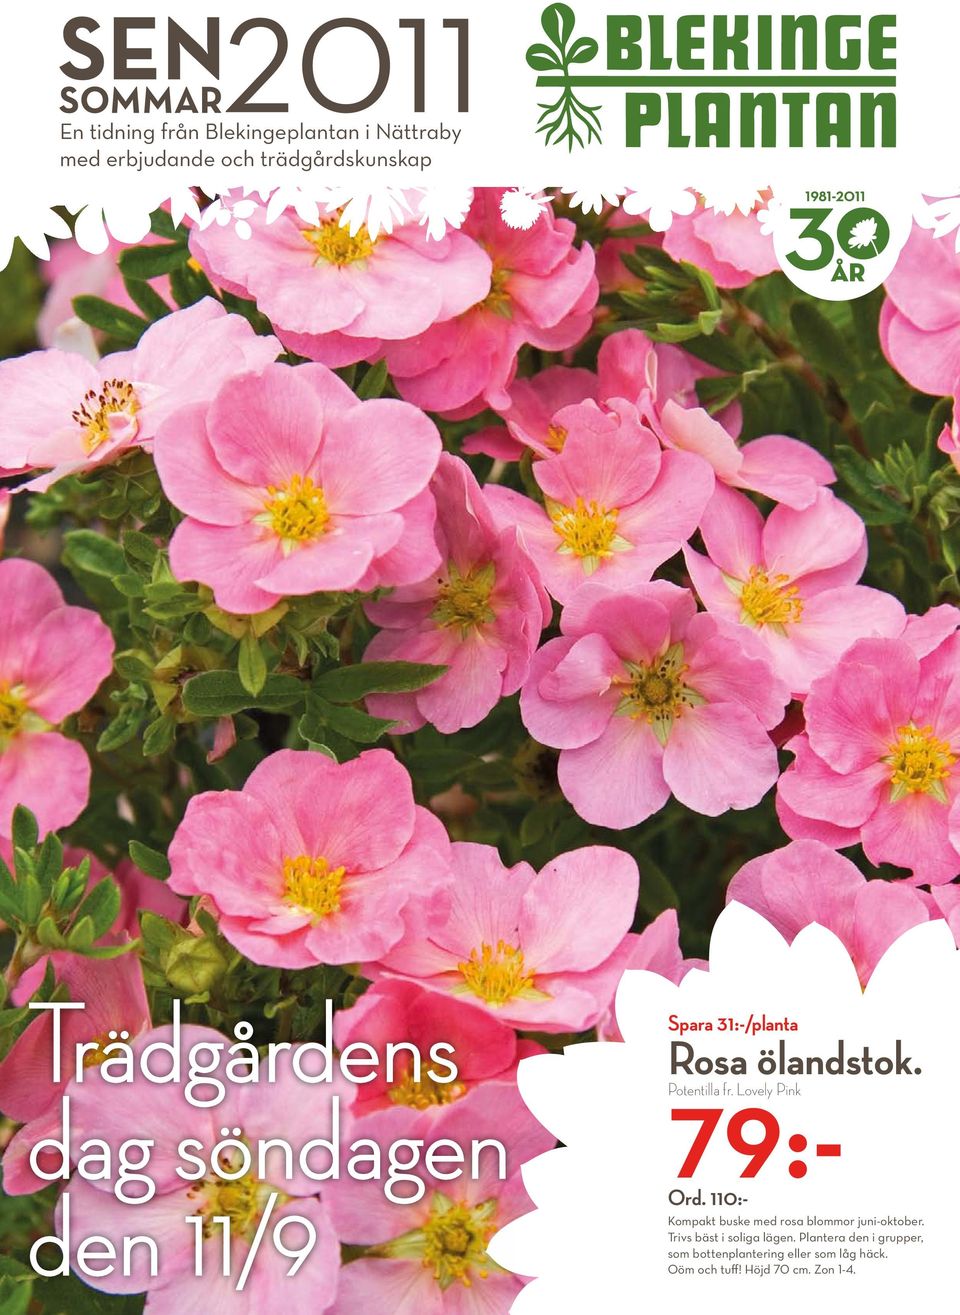 110:- Kompakt buske med rosa blommor juni-oktober. Trivs bäst i soliga lägen.